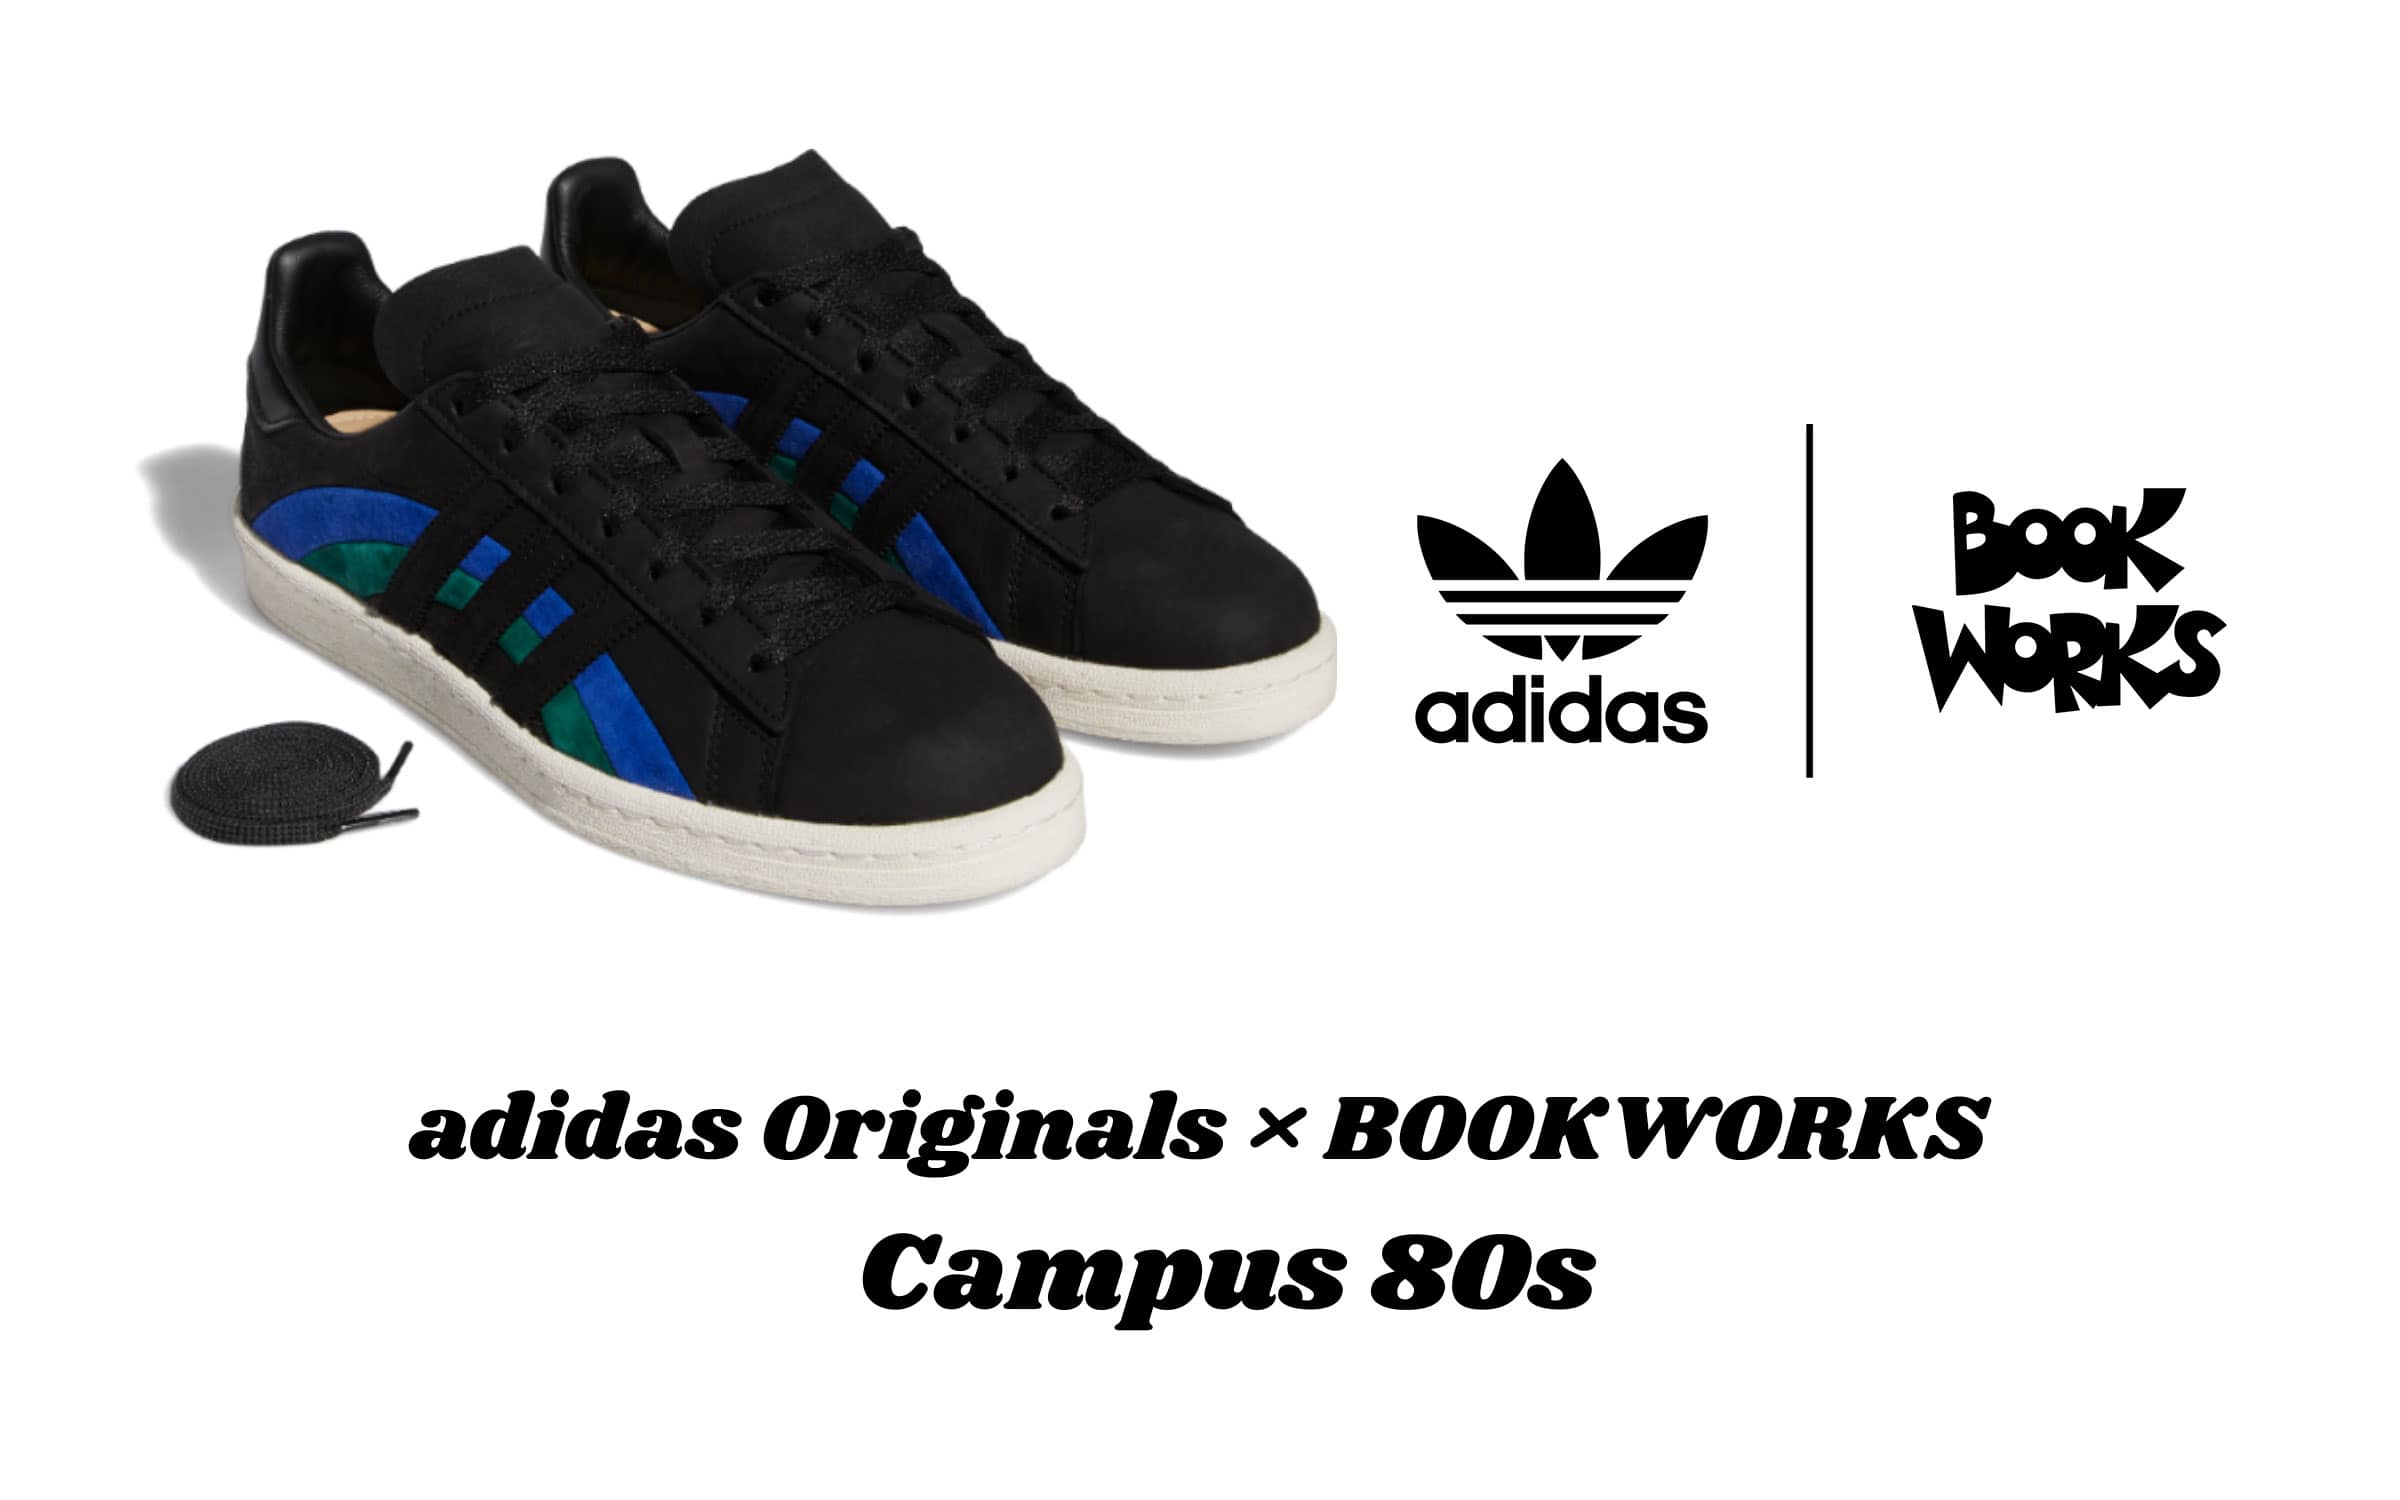 Book Works × adidas Originals Campus 80